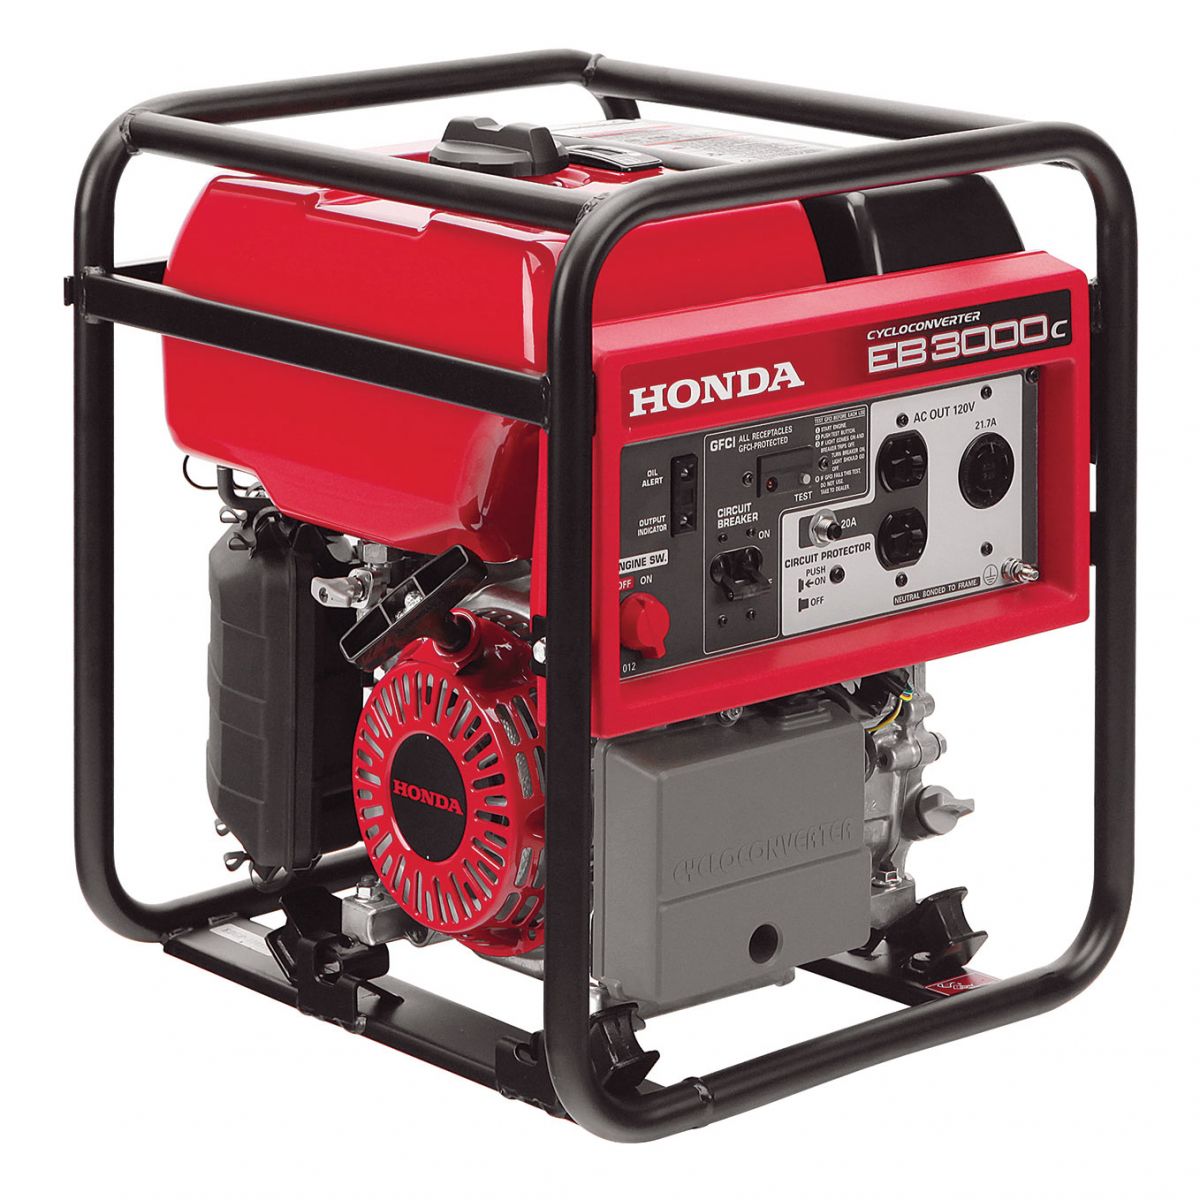 Honda Generator Rental